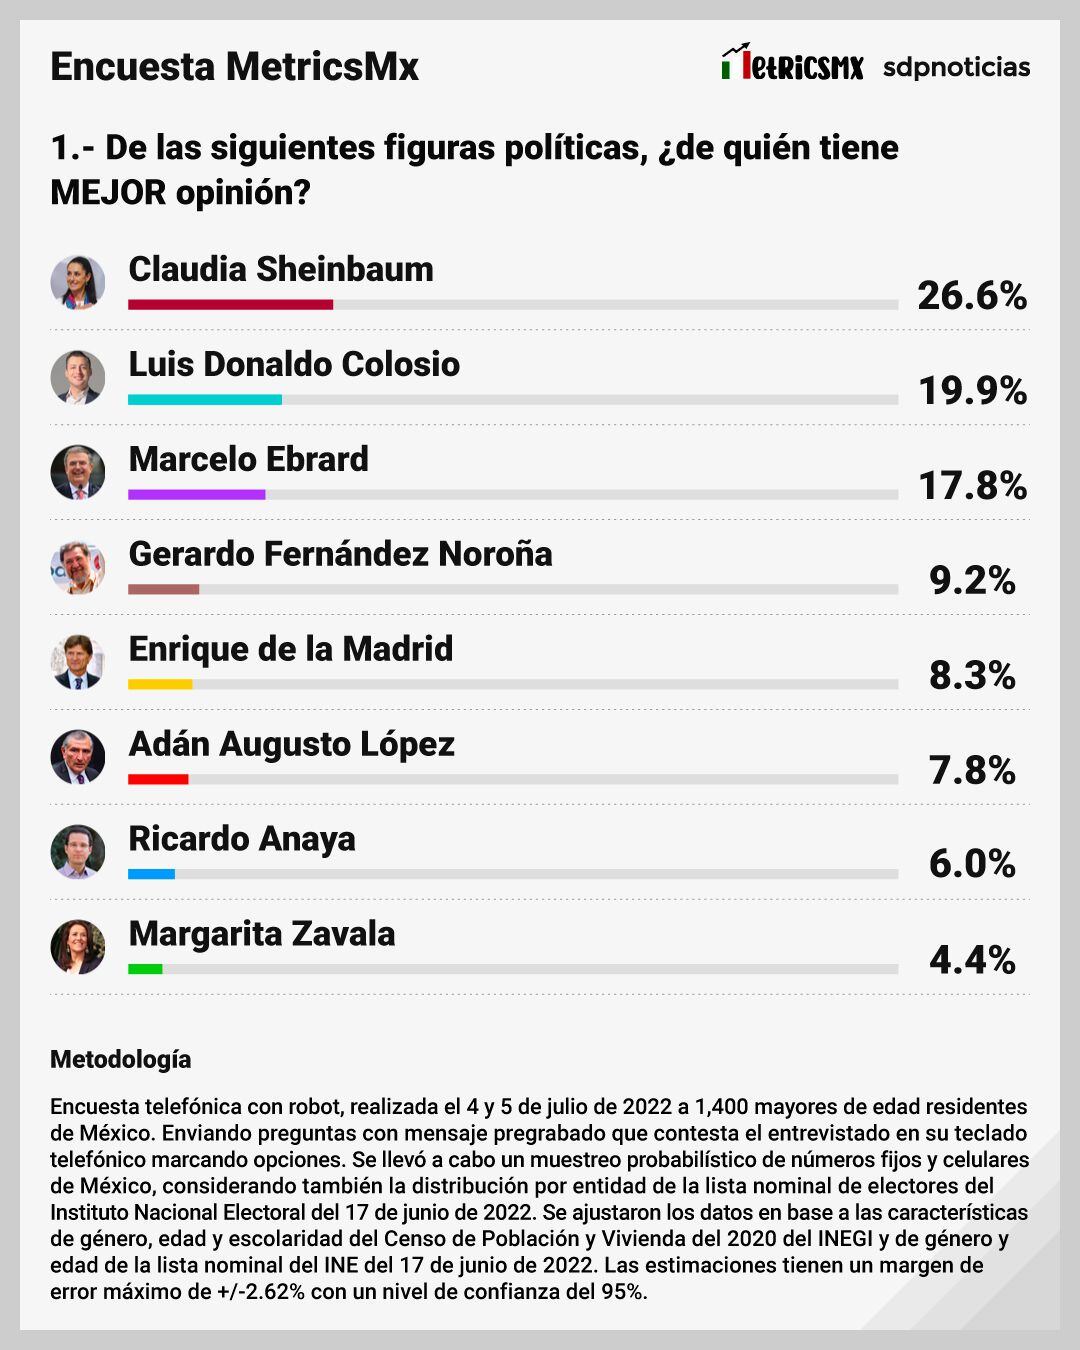 Encuesta MetrcisMx: De las siguientes figuras políticas, ¿de quién tiene mejor opinión?